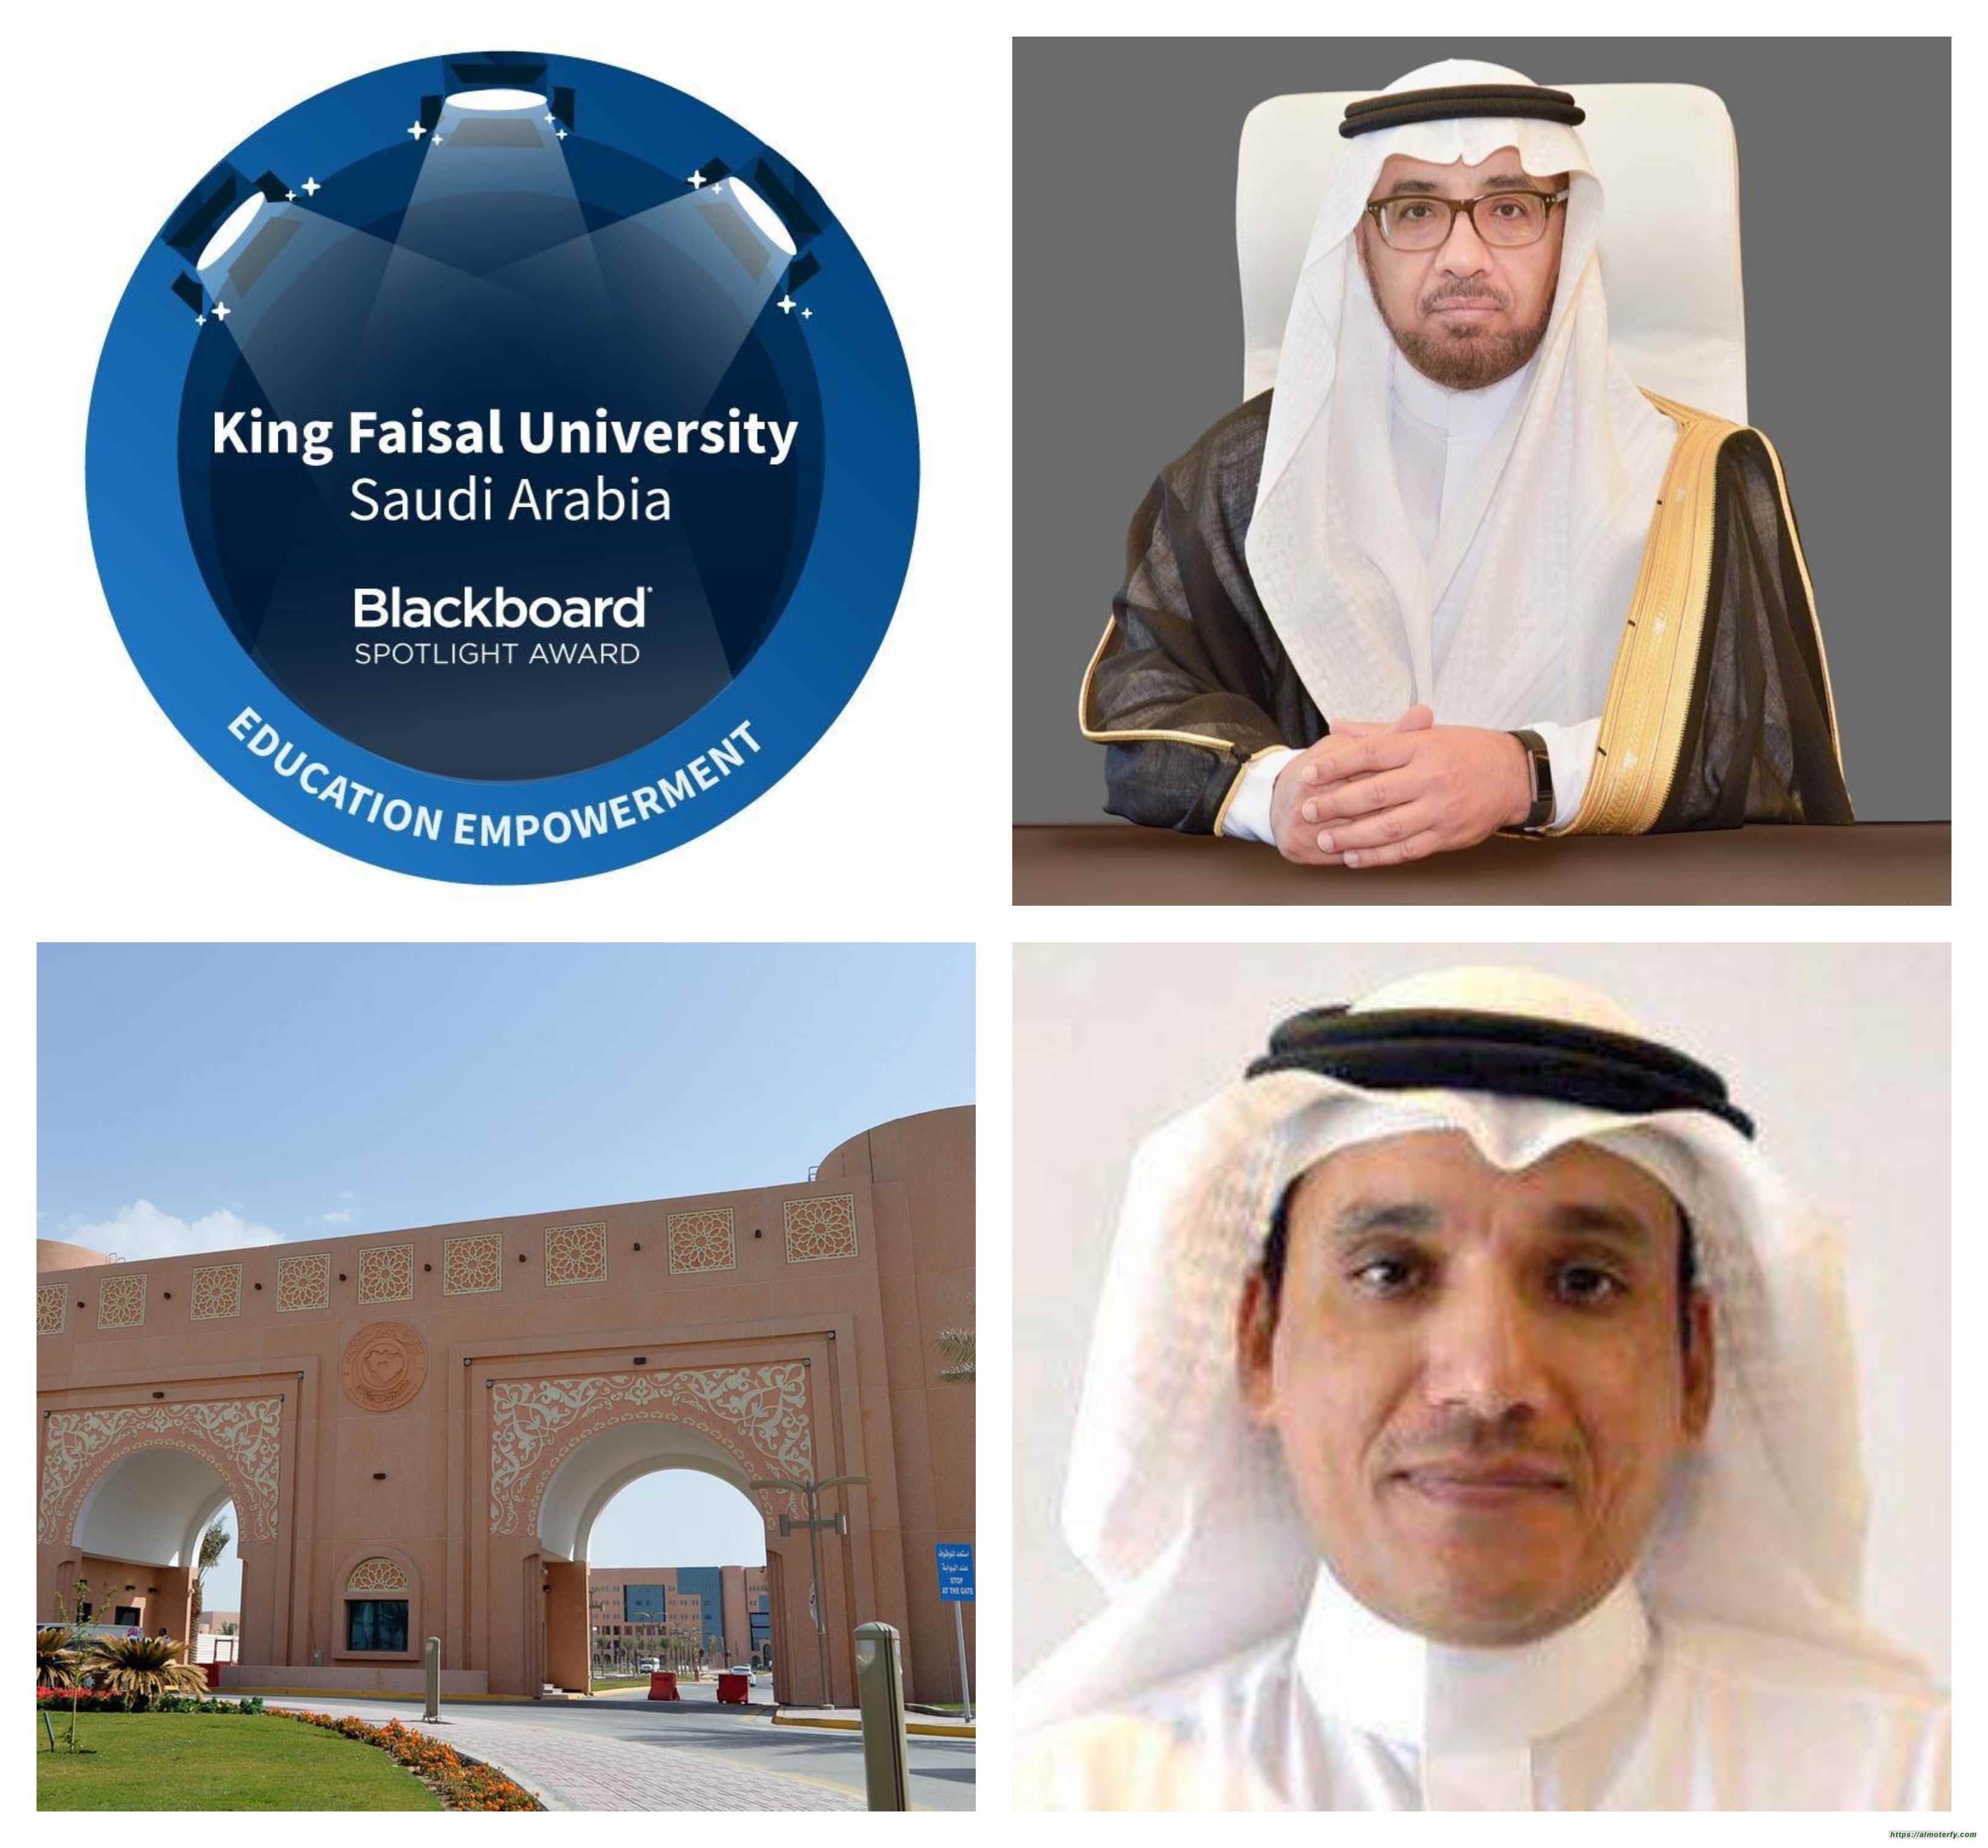 جامعة الملك فيصل بالاحساء تفوز بجائزة بلاكبورد لفئة التميز في تمكين التعليم من خلال منصة بلاكبورد لعام 2021